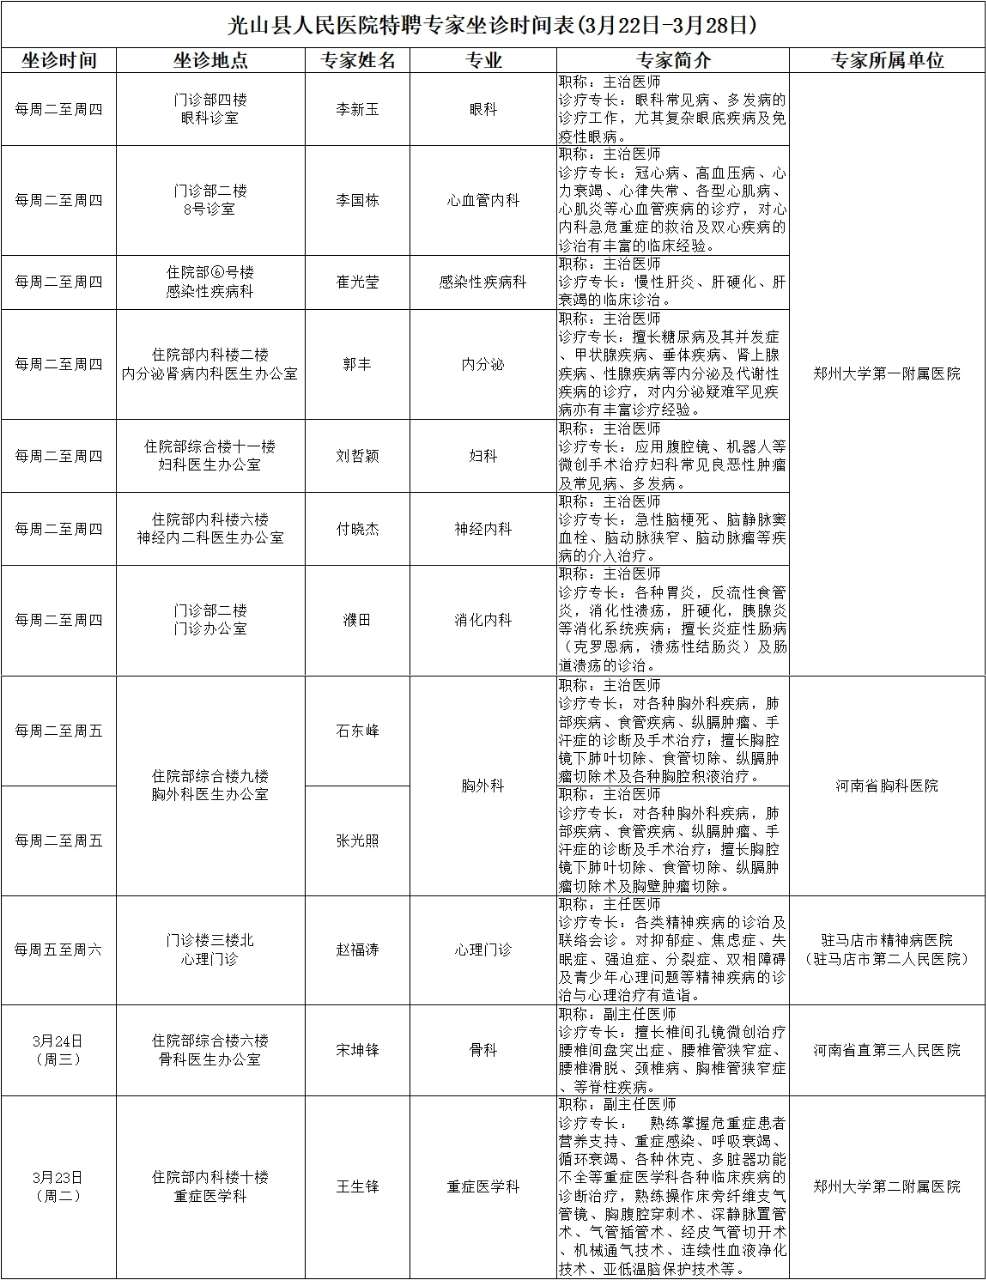 3月22日—28日光山县人民医院特聘专家来院信息在